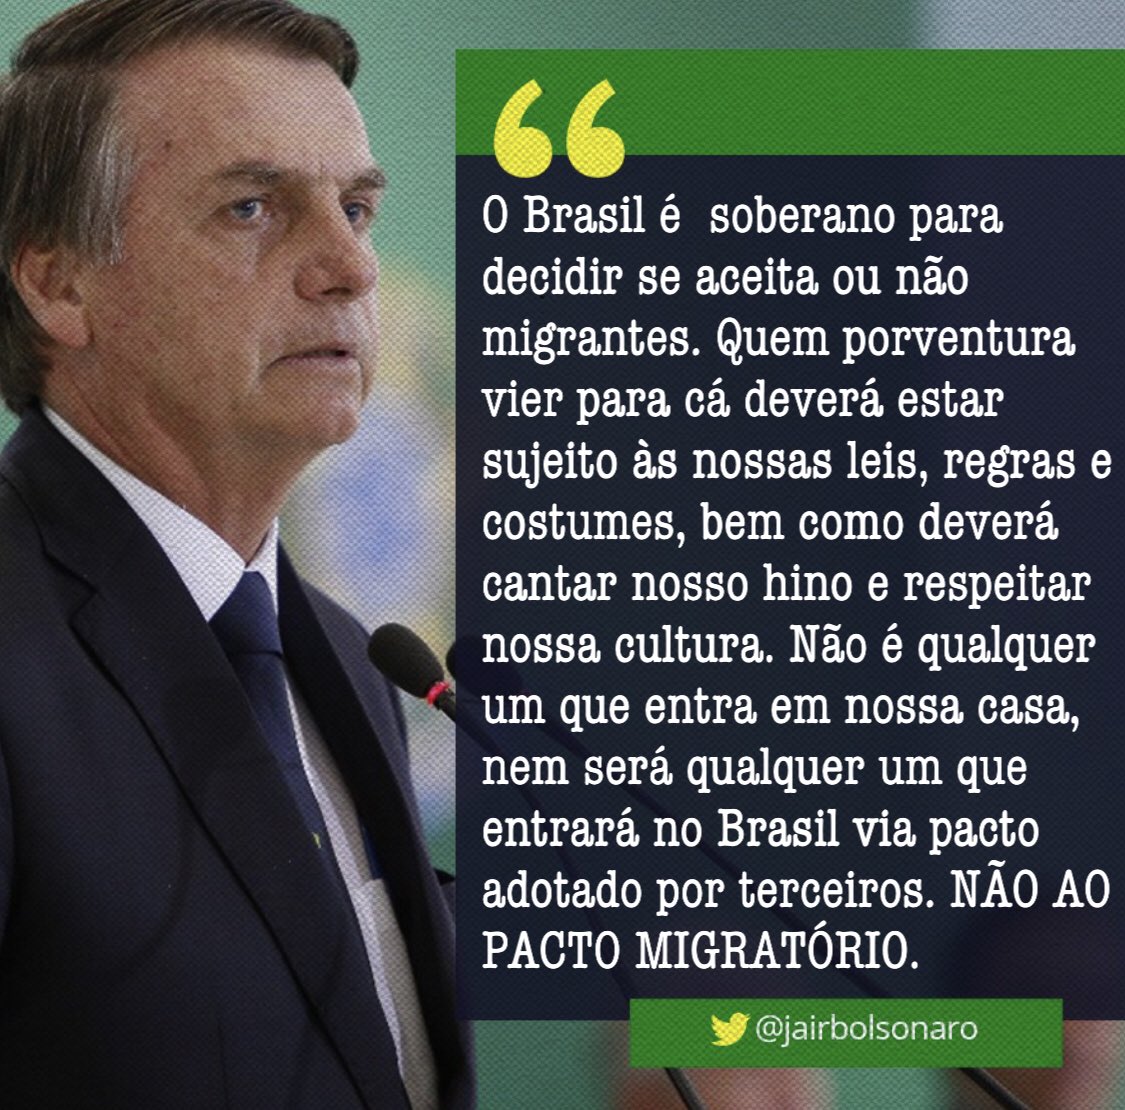 Elecciones en Brasil: El ultraderechista Bolsonaro gana en primera vuelta. - Página 11 DwdR3uKW0AEKQP9